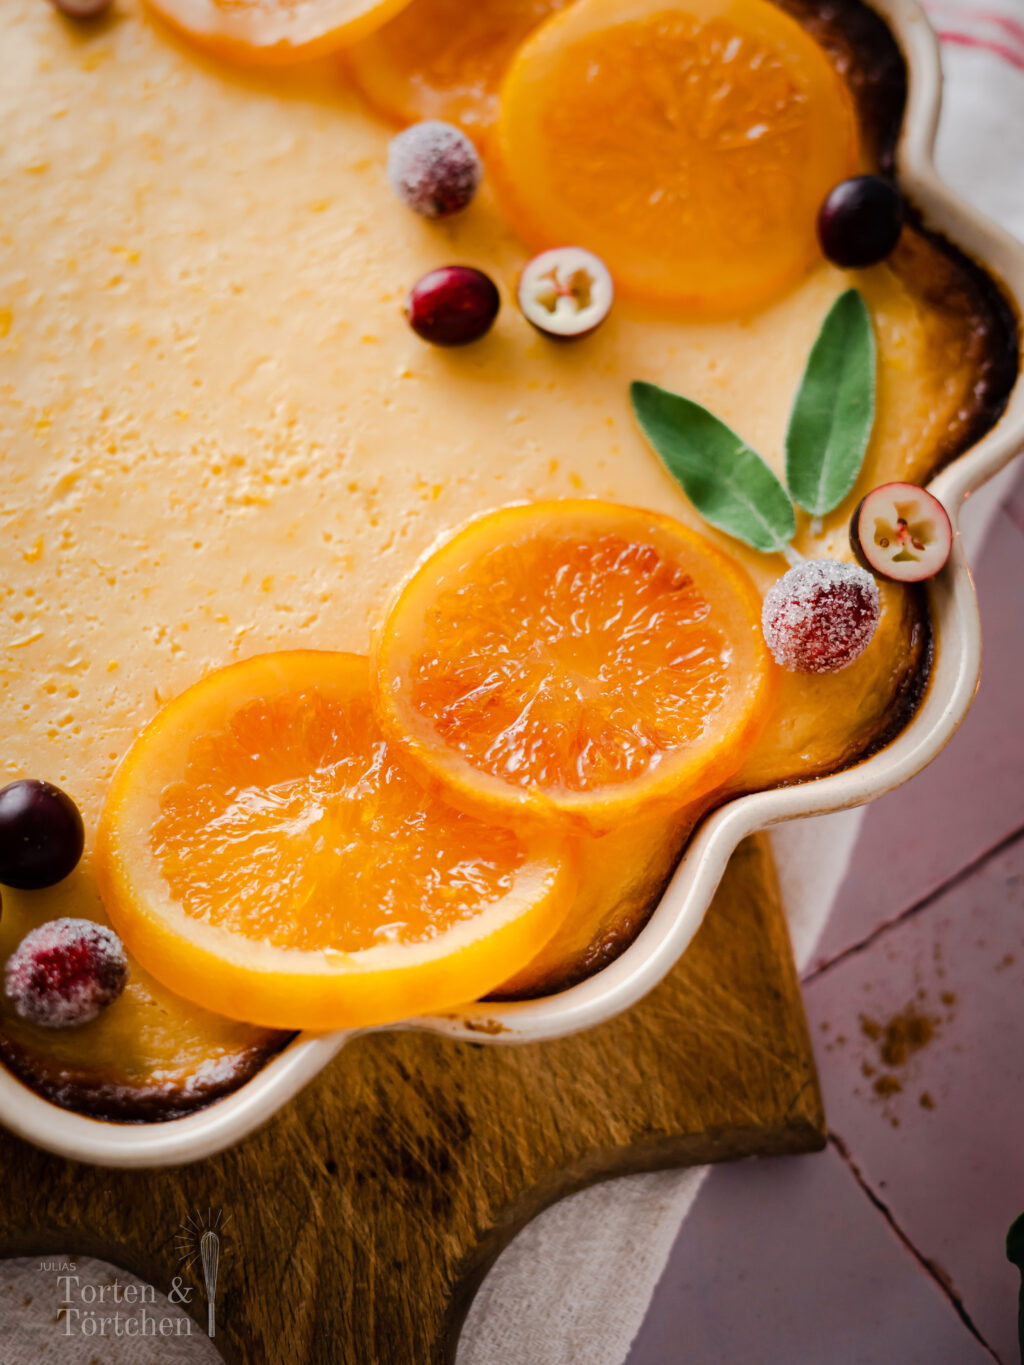 Der perfekte Kuchen für alle Citrus Freunde. Eine Variante des amerikanischen Key Lime Pies, dieses mal Mit Orangen. Die cremige Füllung aus aromatischen Orangen-Zesten und mit Kondensmilch macht den Pie für ein absolutes Highlight auf jeder Kaffeetafel! #Backen #Pie #Kuchen #Orangenkuchen #Torte #Rezept #KeyLimePie